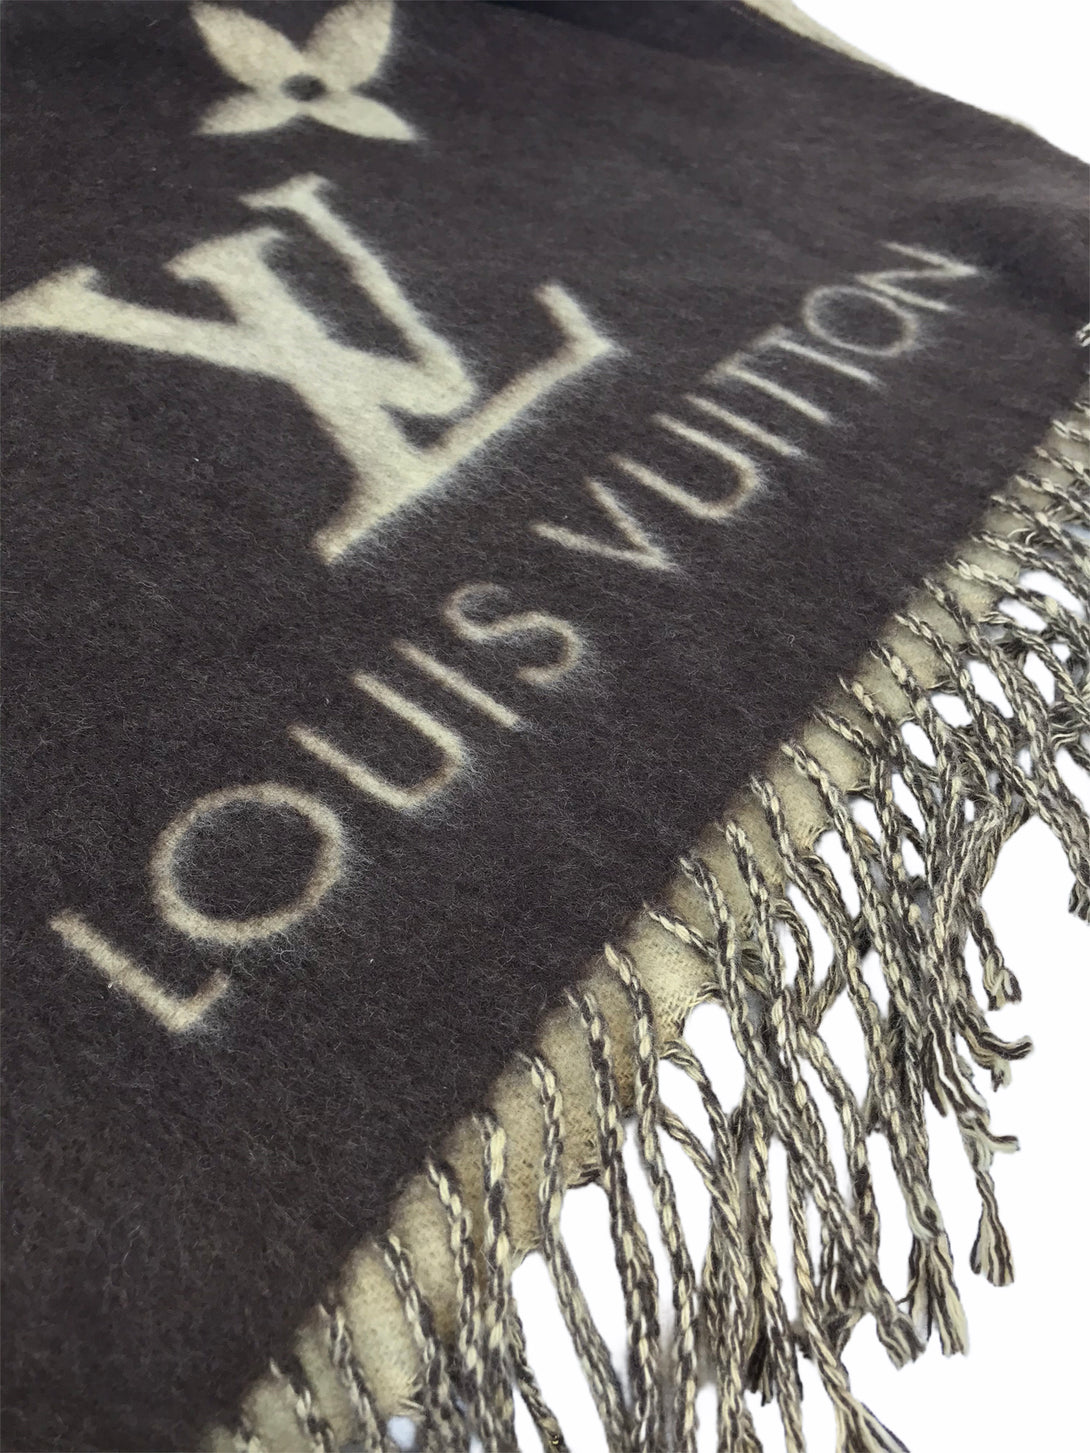 Louis Vuitton Cashmere Scarf - As Seen on Instagram 19/08/2020 - Siopaella Designer Exchange